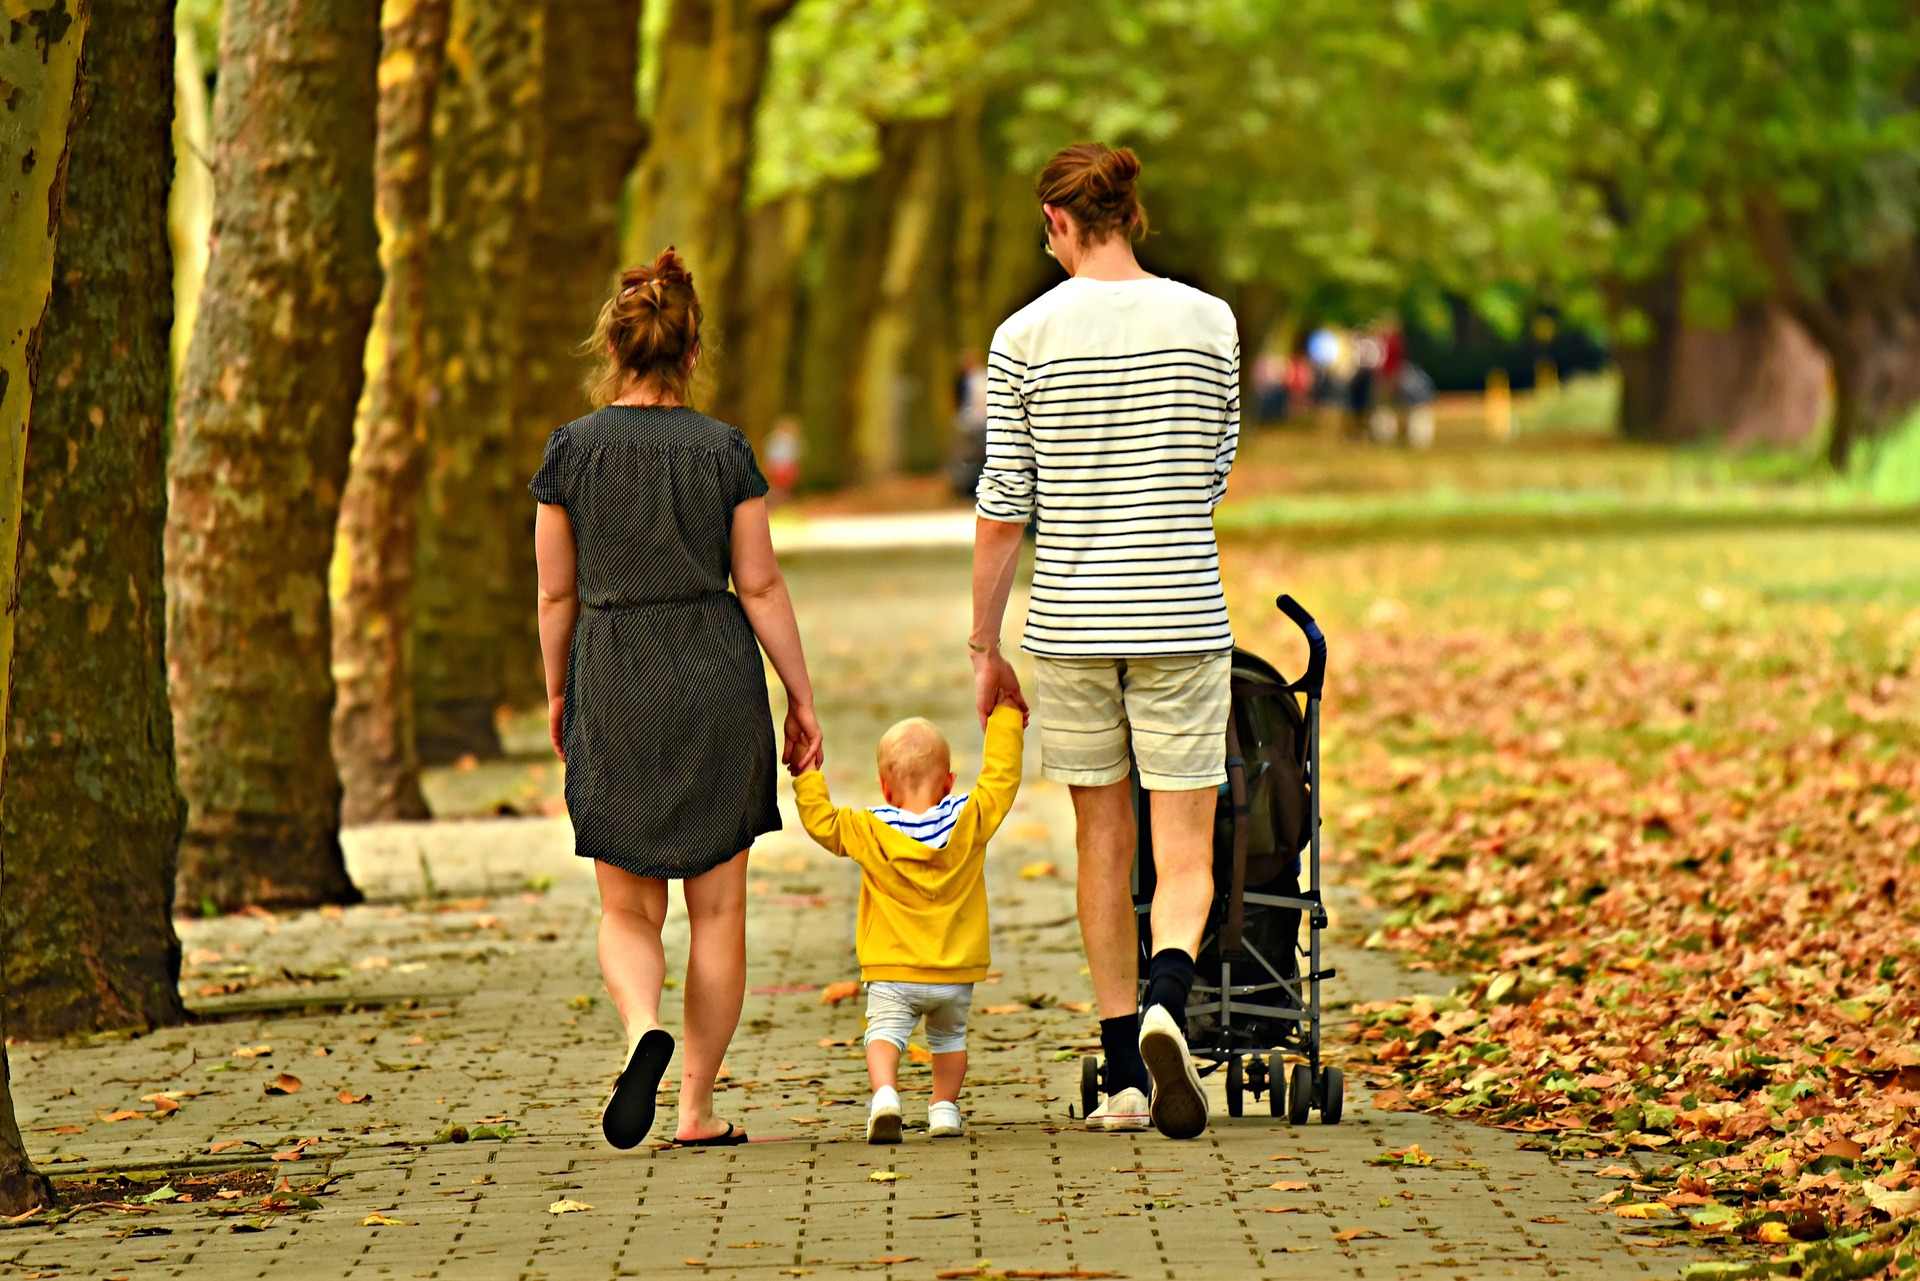 Dans nos sociétés occidentales, les soins quotidiens apportés aux enfants sont donnés quasi exclusivement par les deux parents. © Mabel Amber, Pixabay